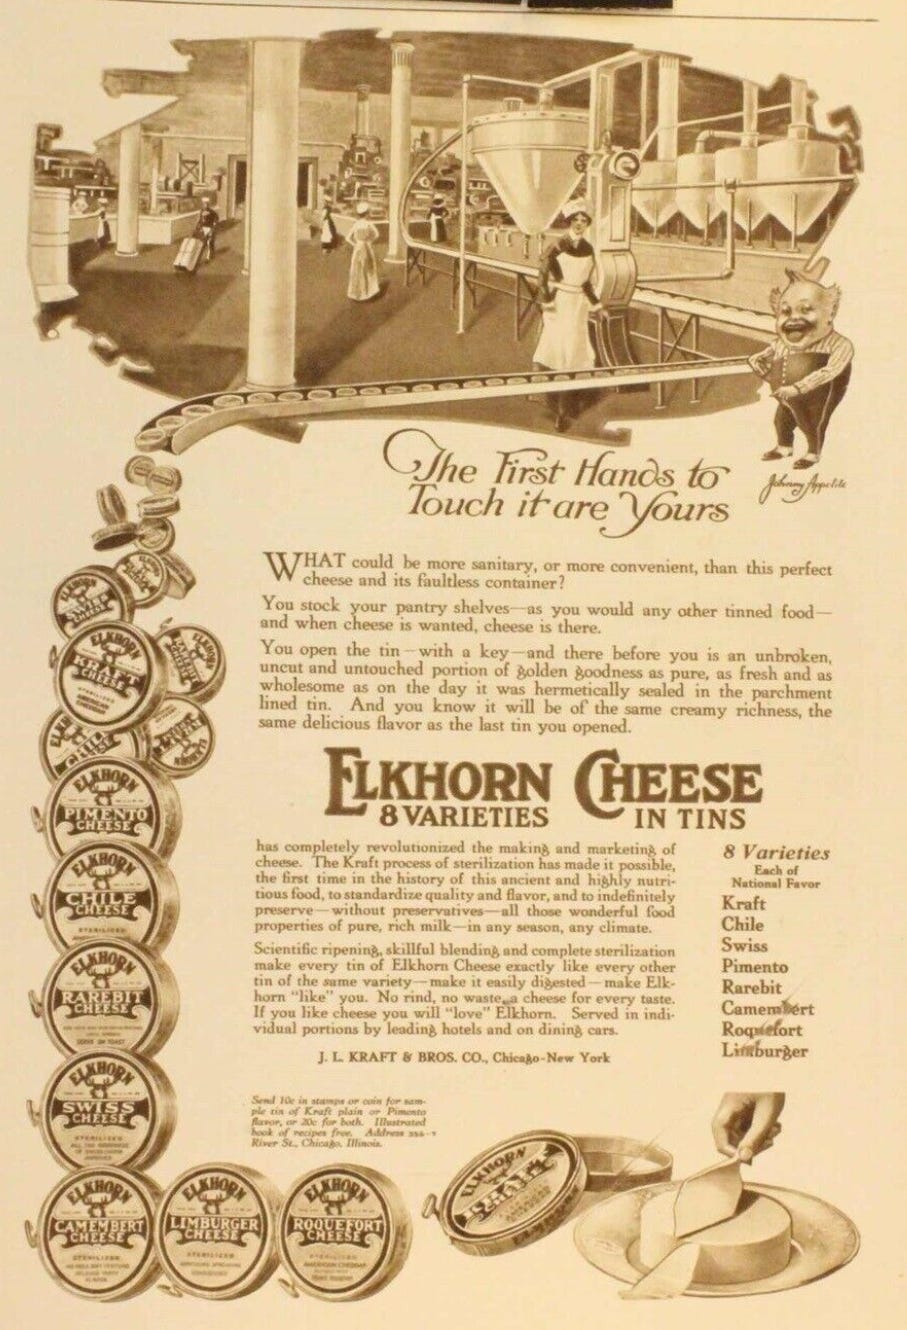 Elkhorn cheese advertisement